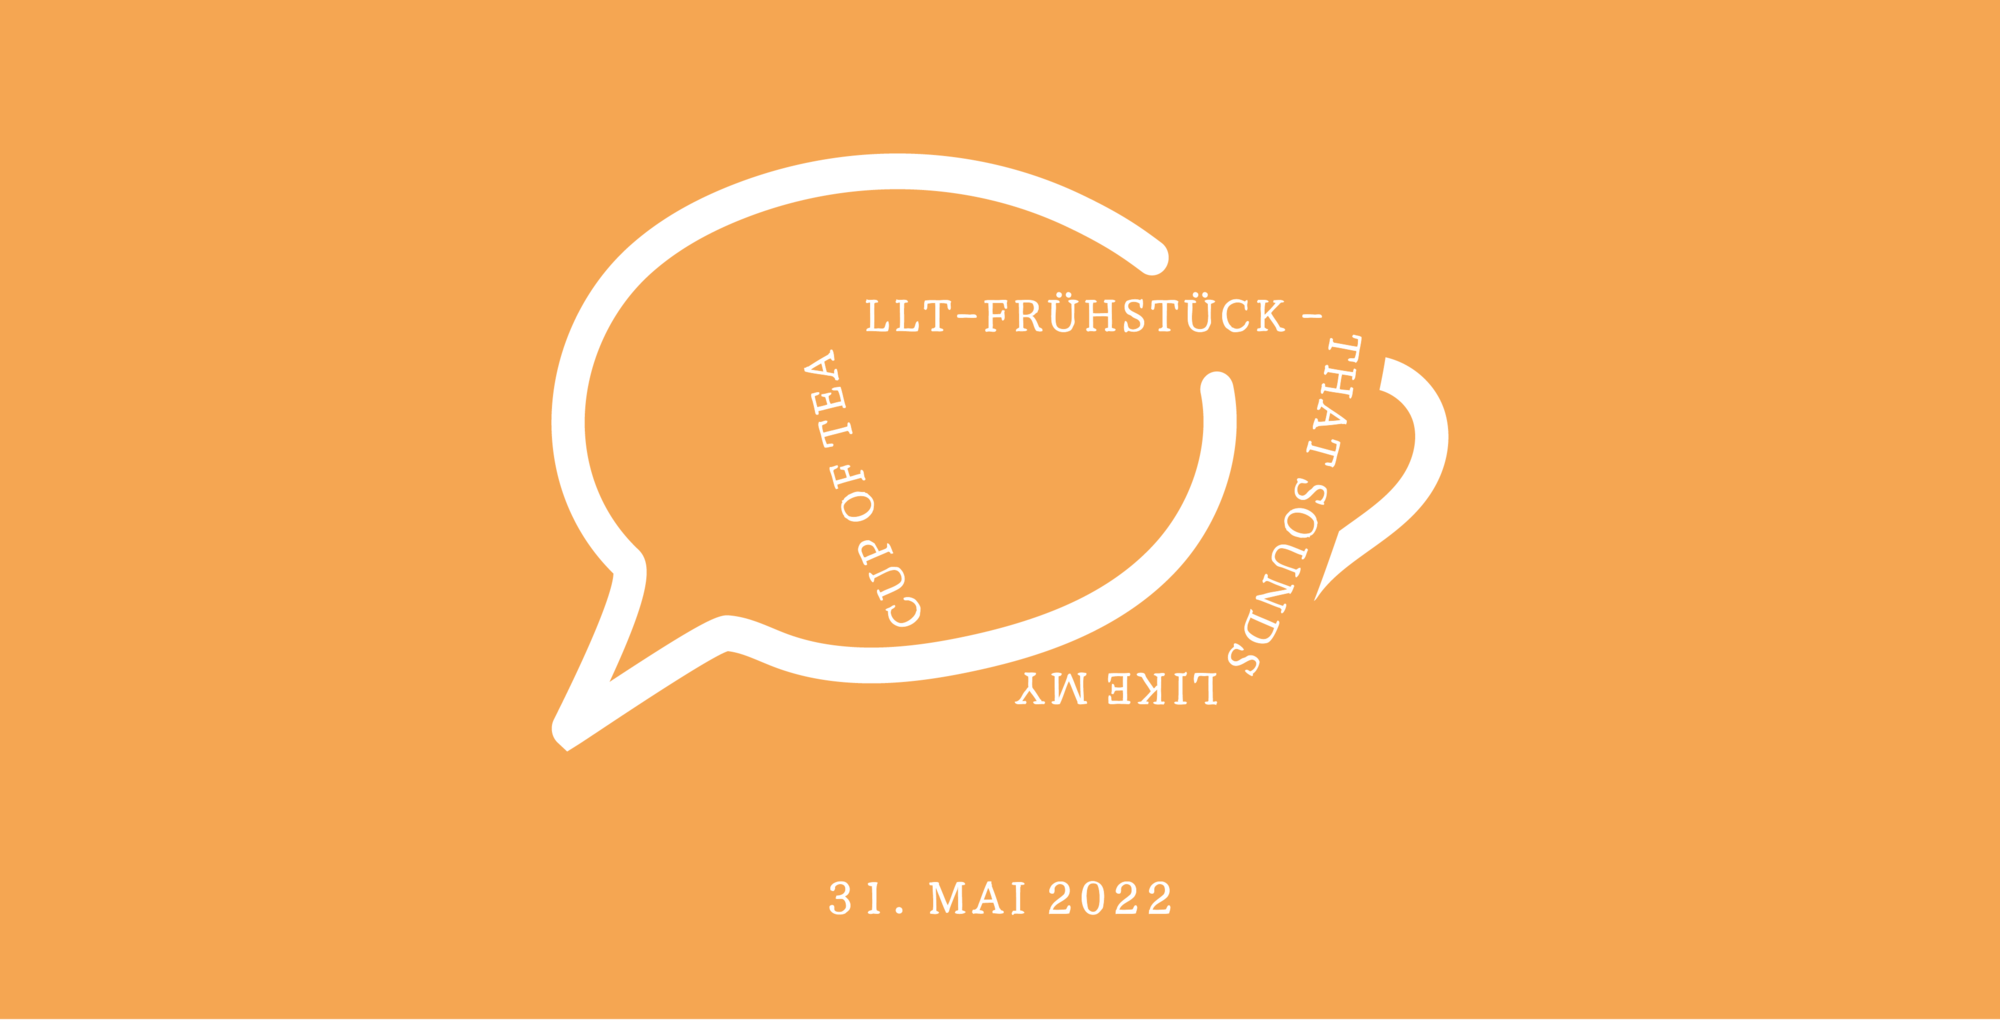 LLT-Frühstück - that sounds like my cup of tea